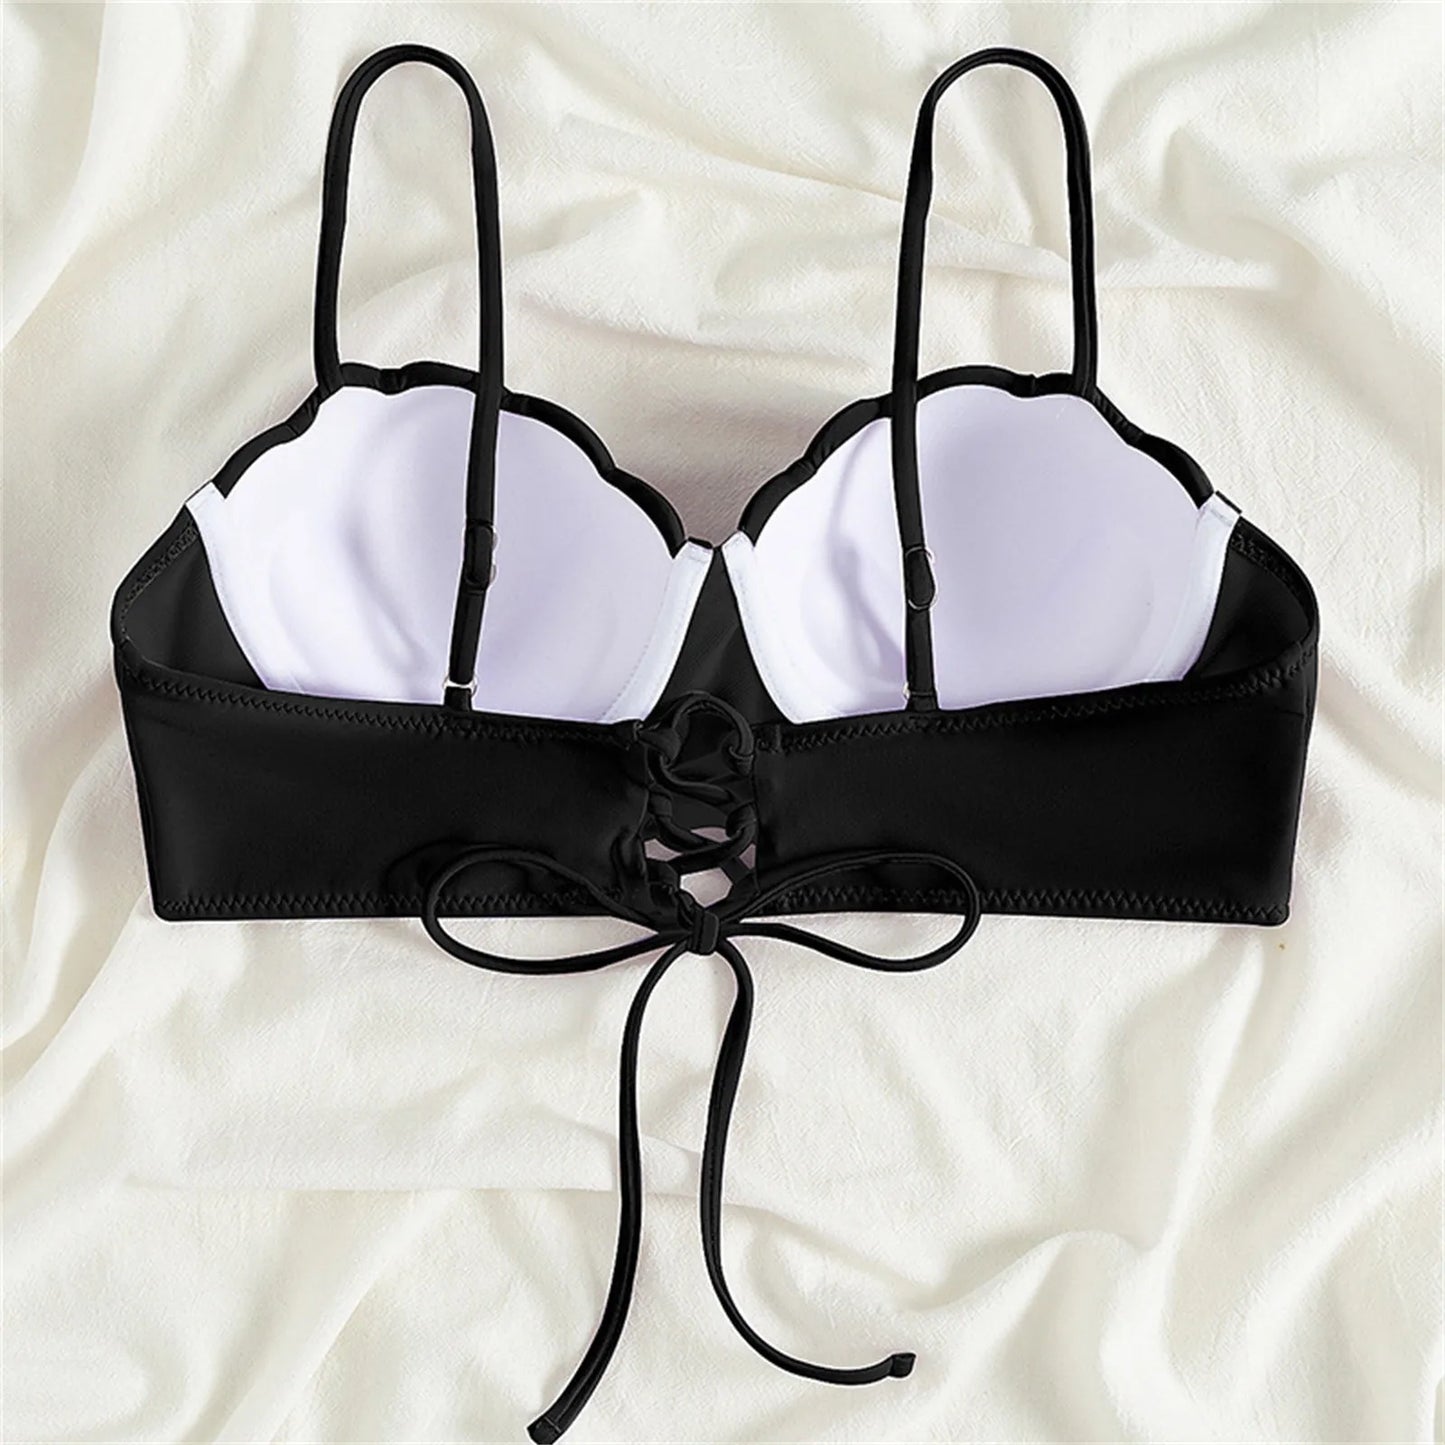 Amy Fashion - Olid Swimwear Padded Bra Top Girls Bikini Sets